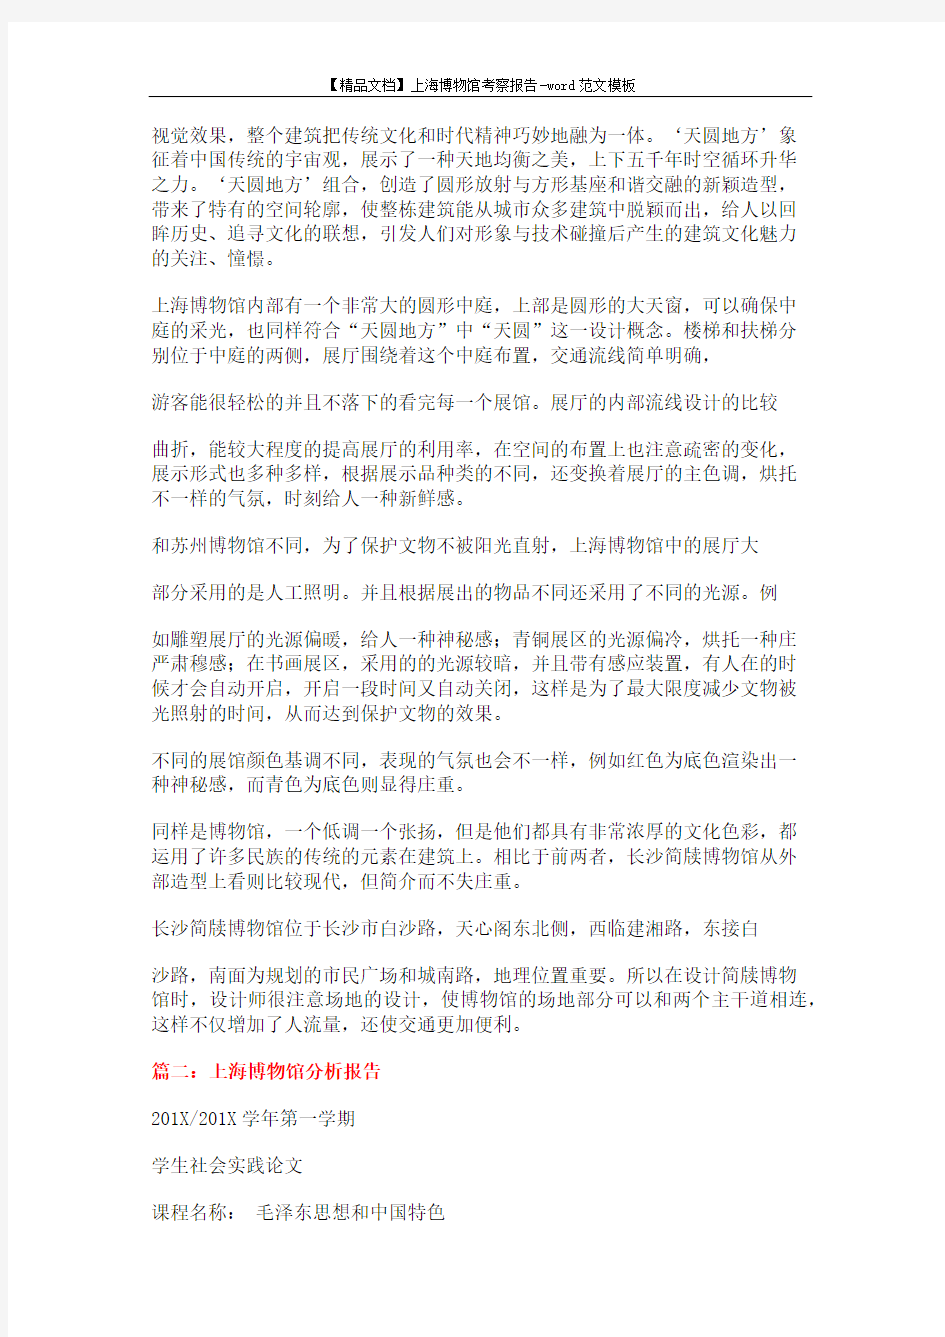 上海博物馆考察报告模板 (9页)